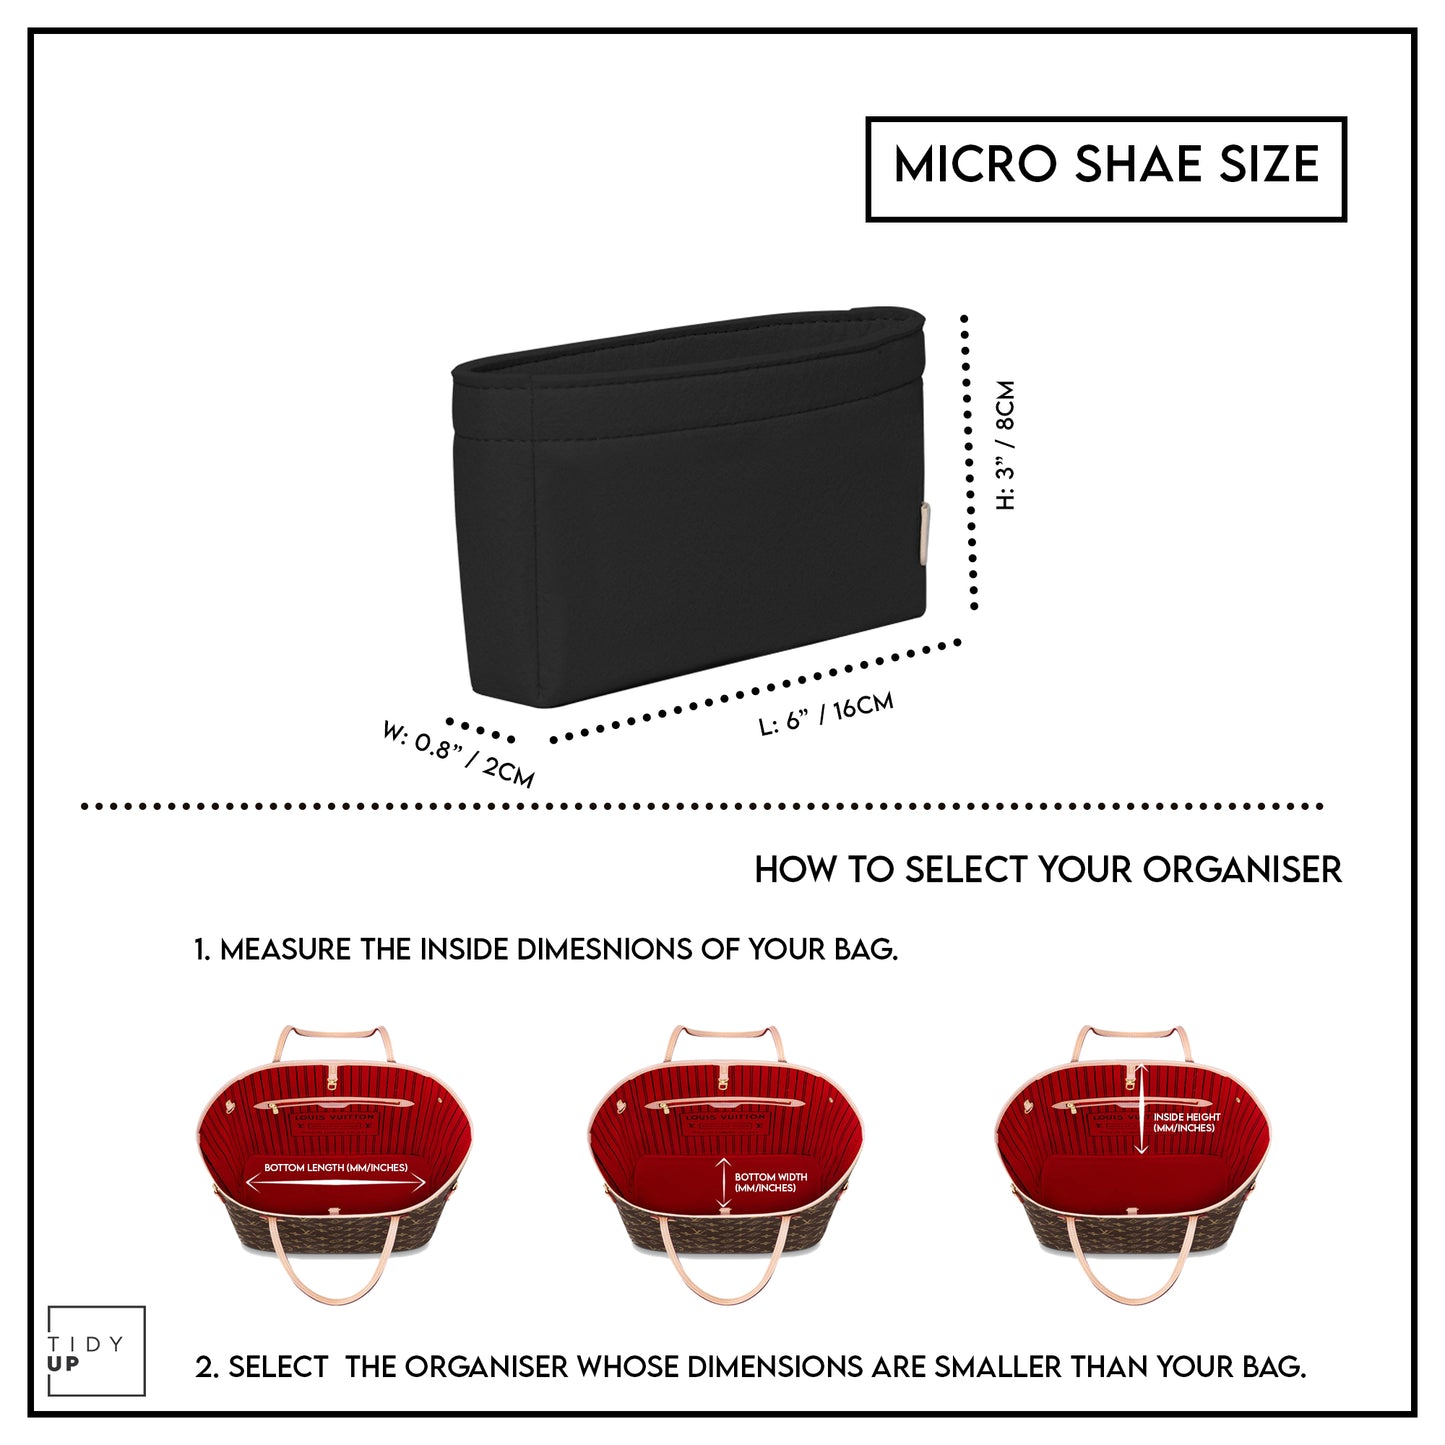 Micro Shae